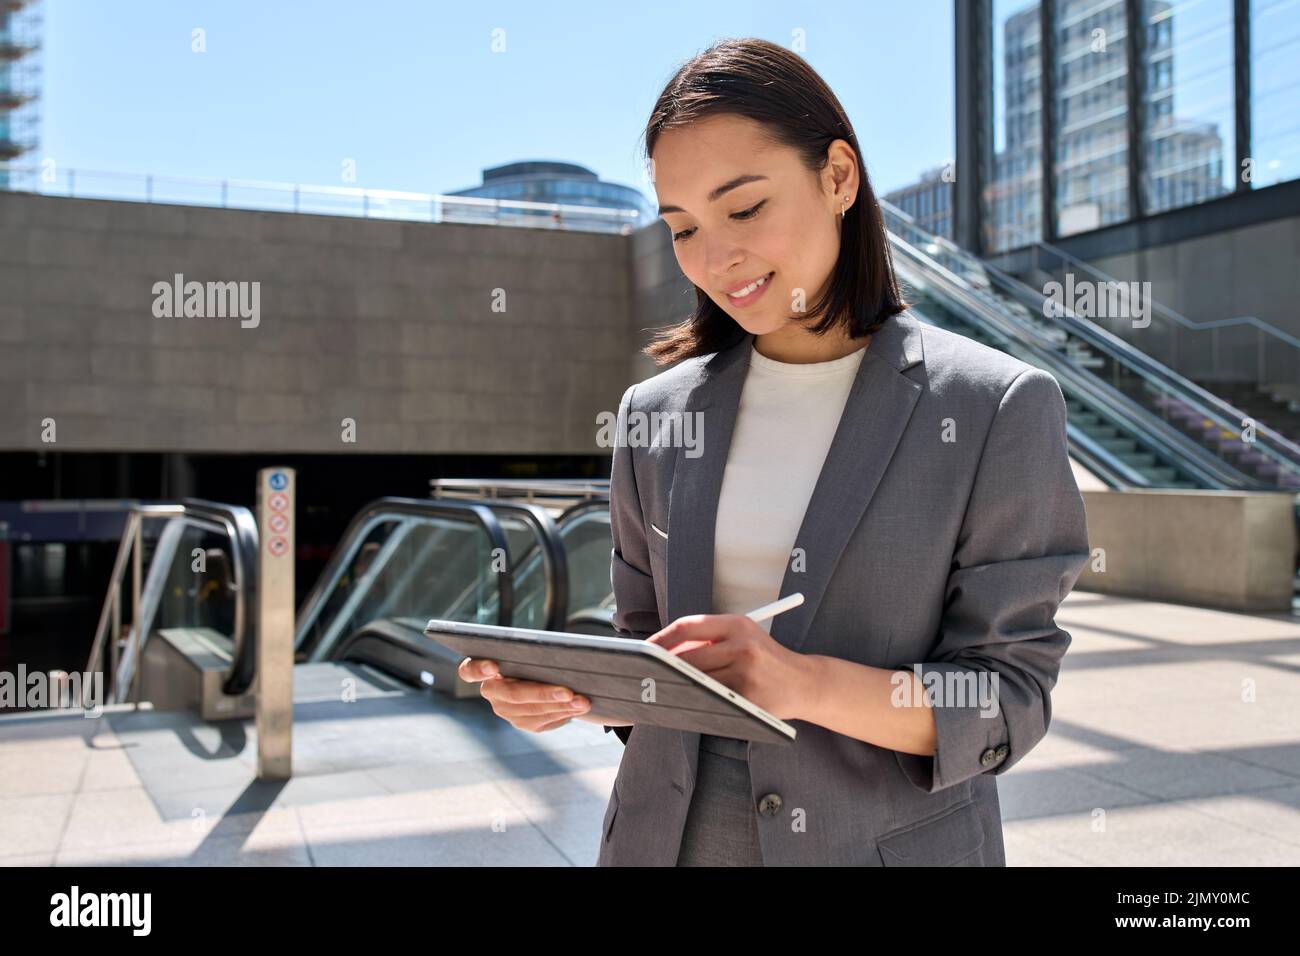 Jeune femme d'Asie entrepreneur debout dans le métro à l'aide d'une tablette numérique. Banque D'Images